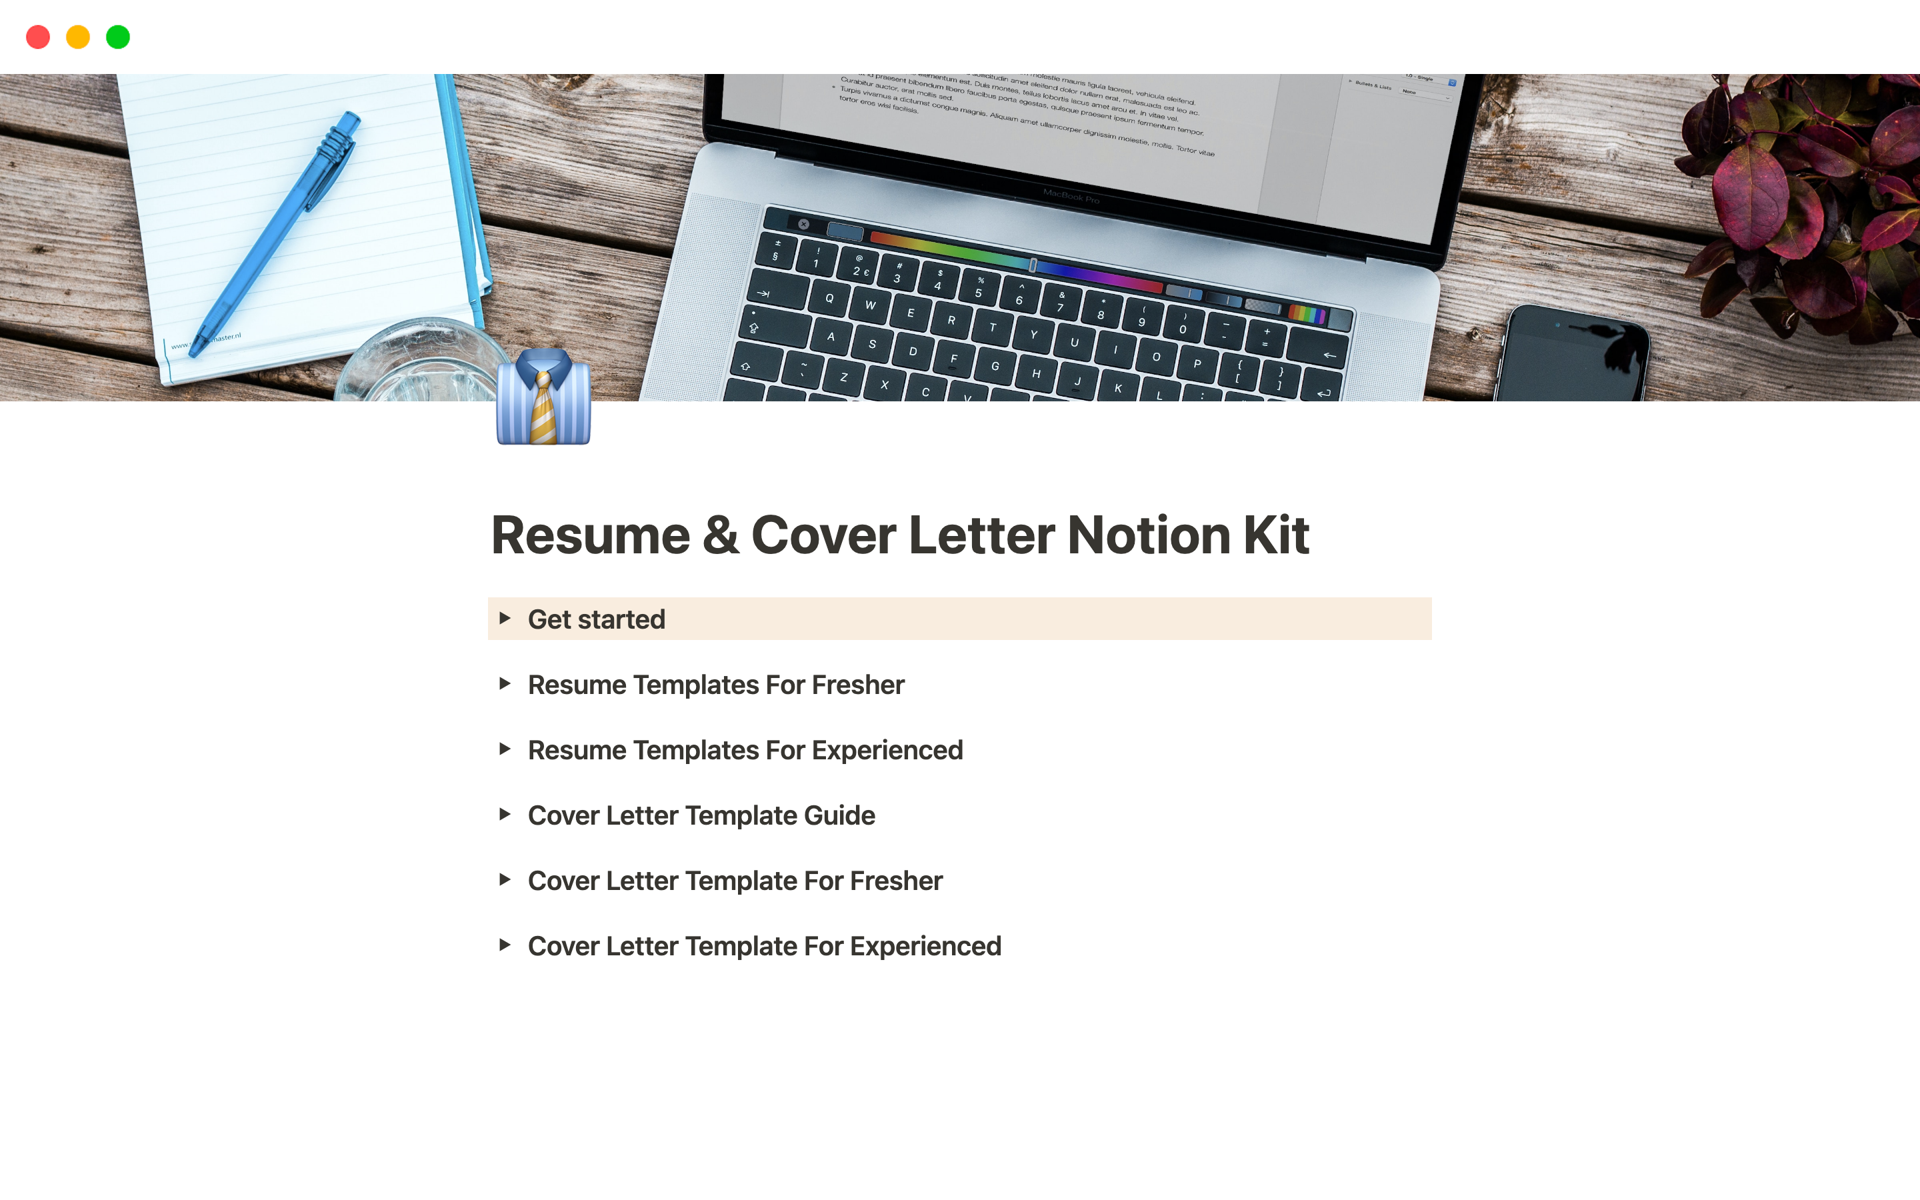 resume-cover-letter-notion-kit-nagaraj-desktop